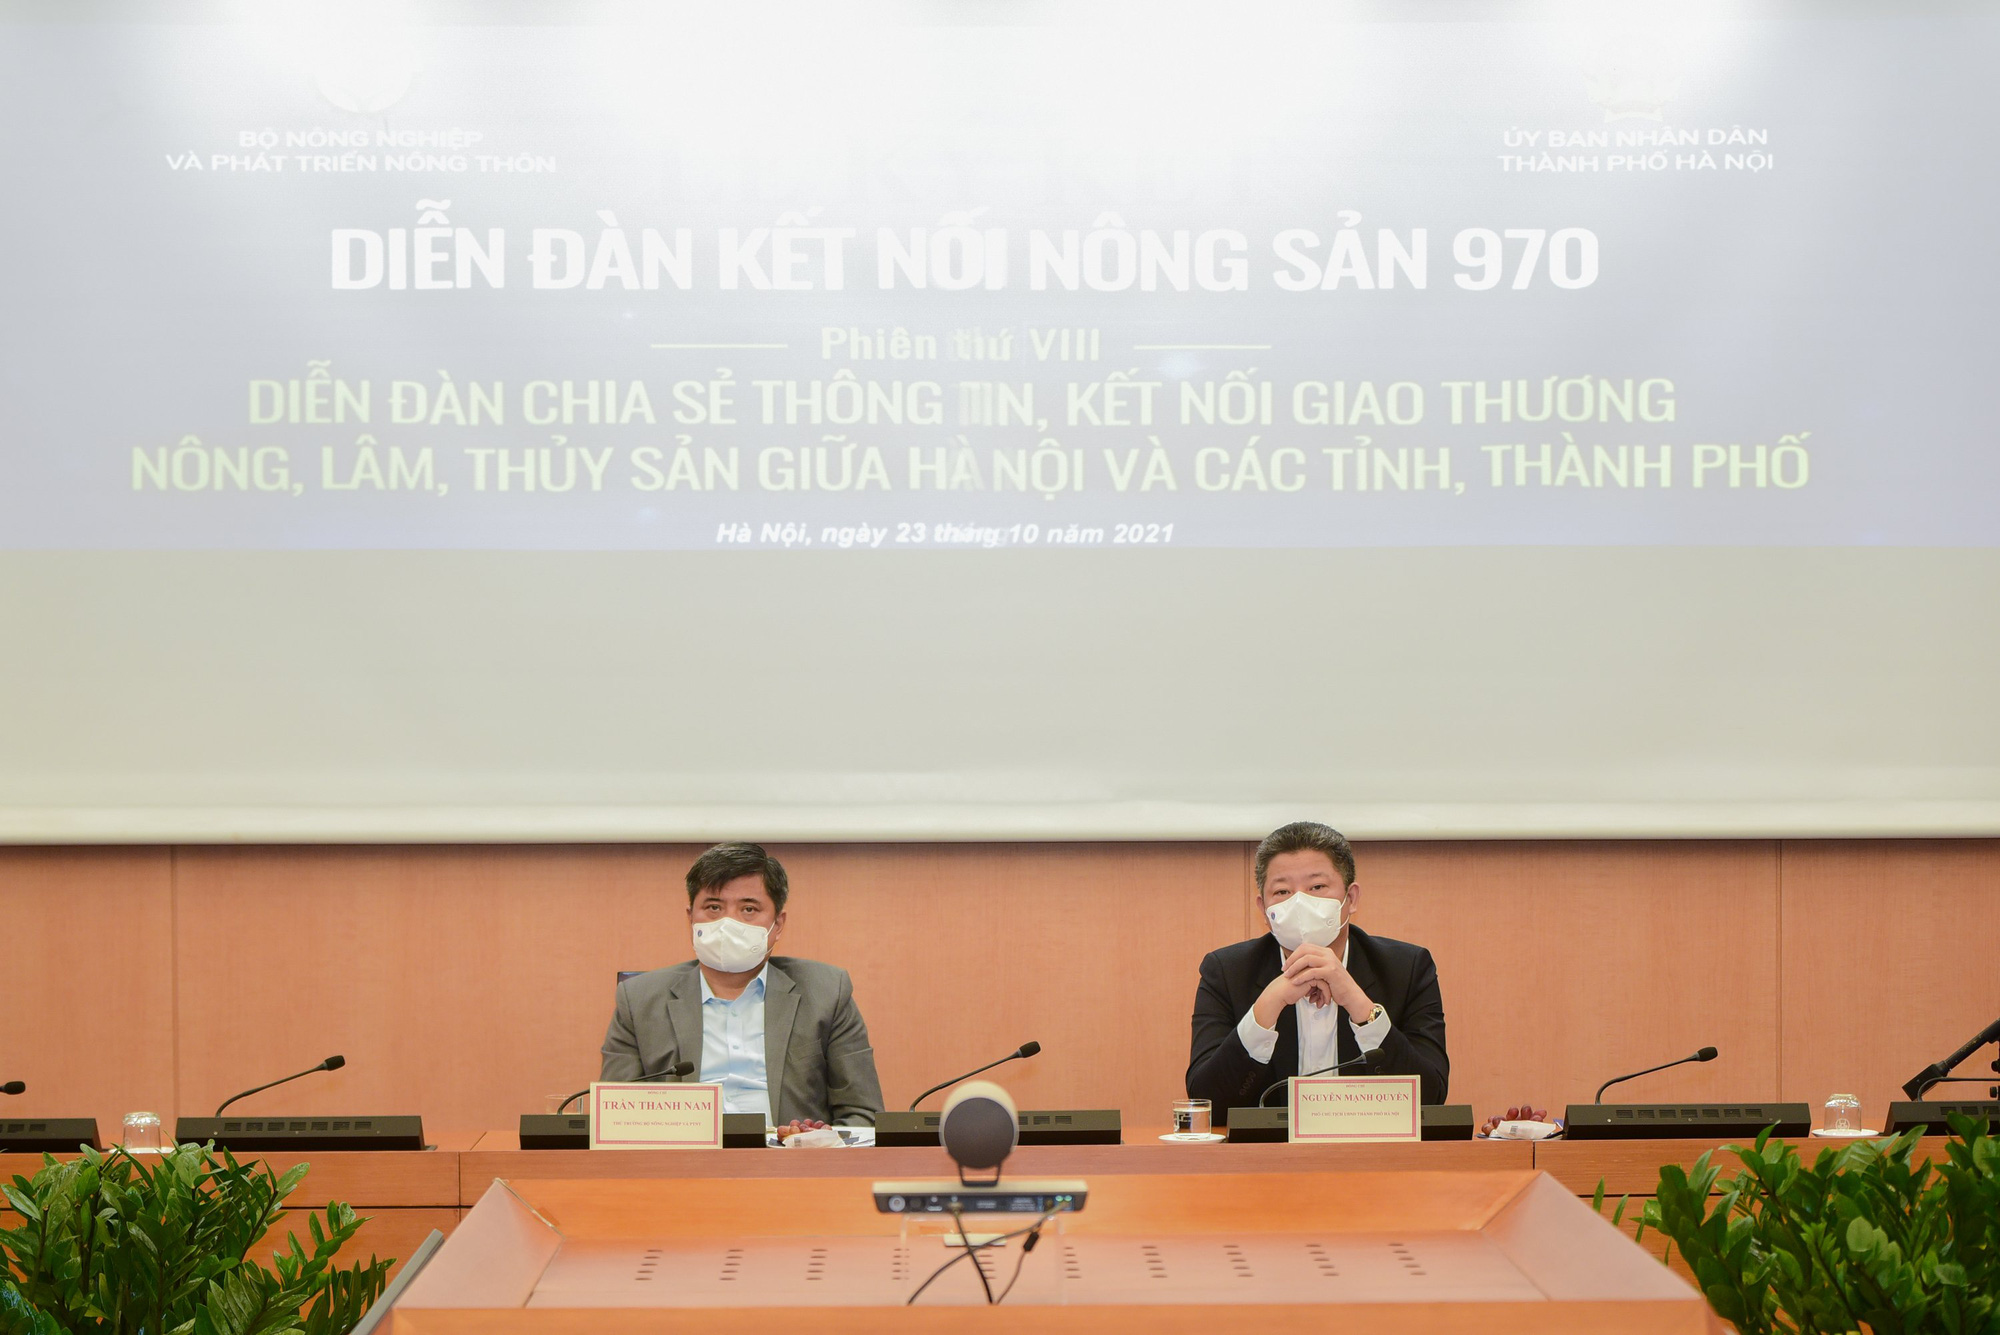 Hà Nội cần mua đủ thứ nông sản dịp cuối năm và Tết Nguyên đán 2022, 40 tỉnh lên tiếng - Ảnh 2.